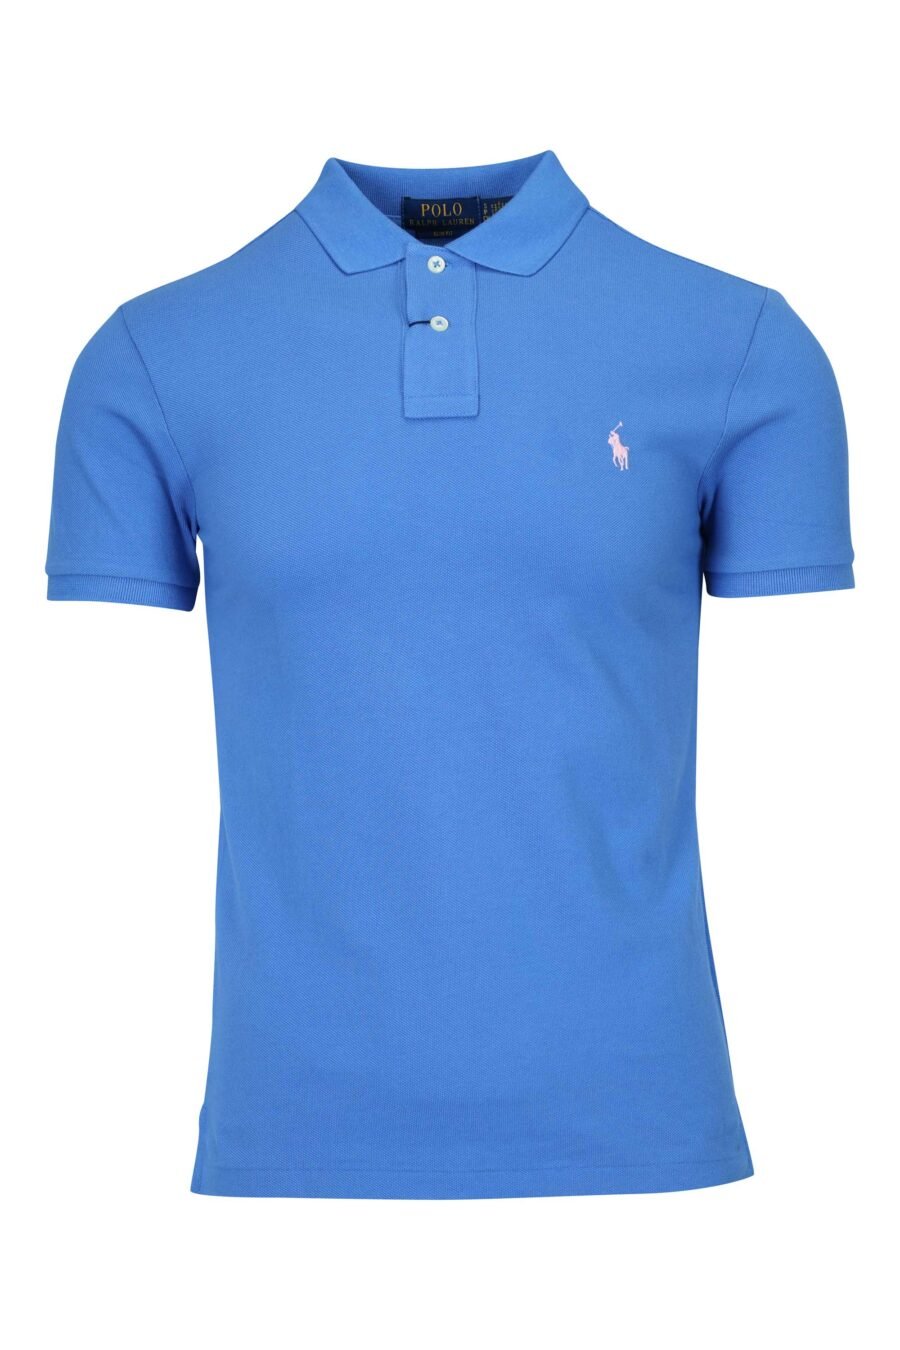 T-shirt bleu et rose avec mini-logo "polo" - 3616536089159